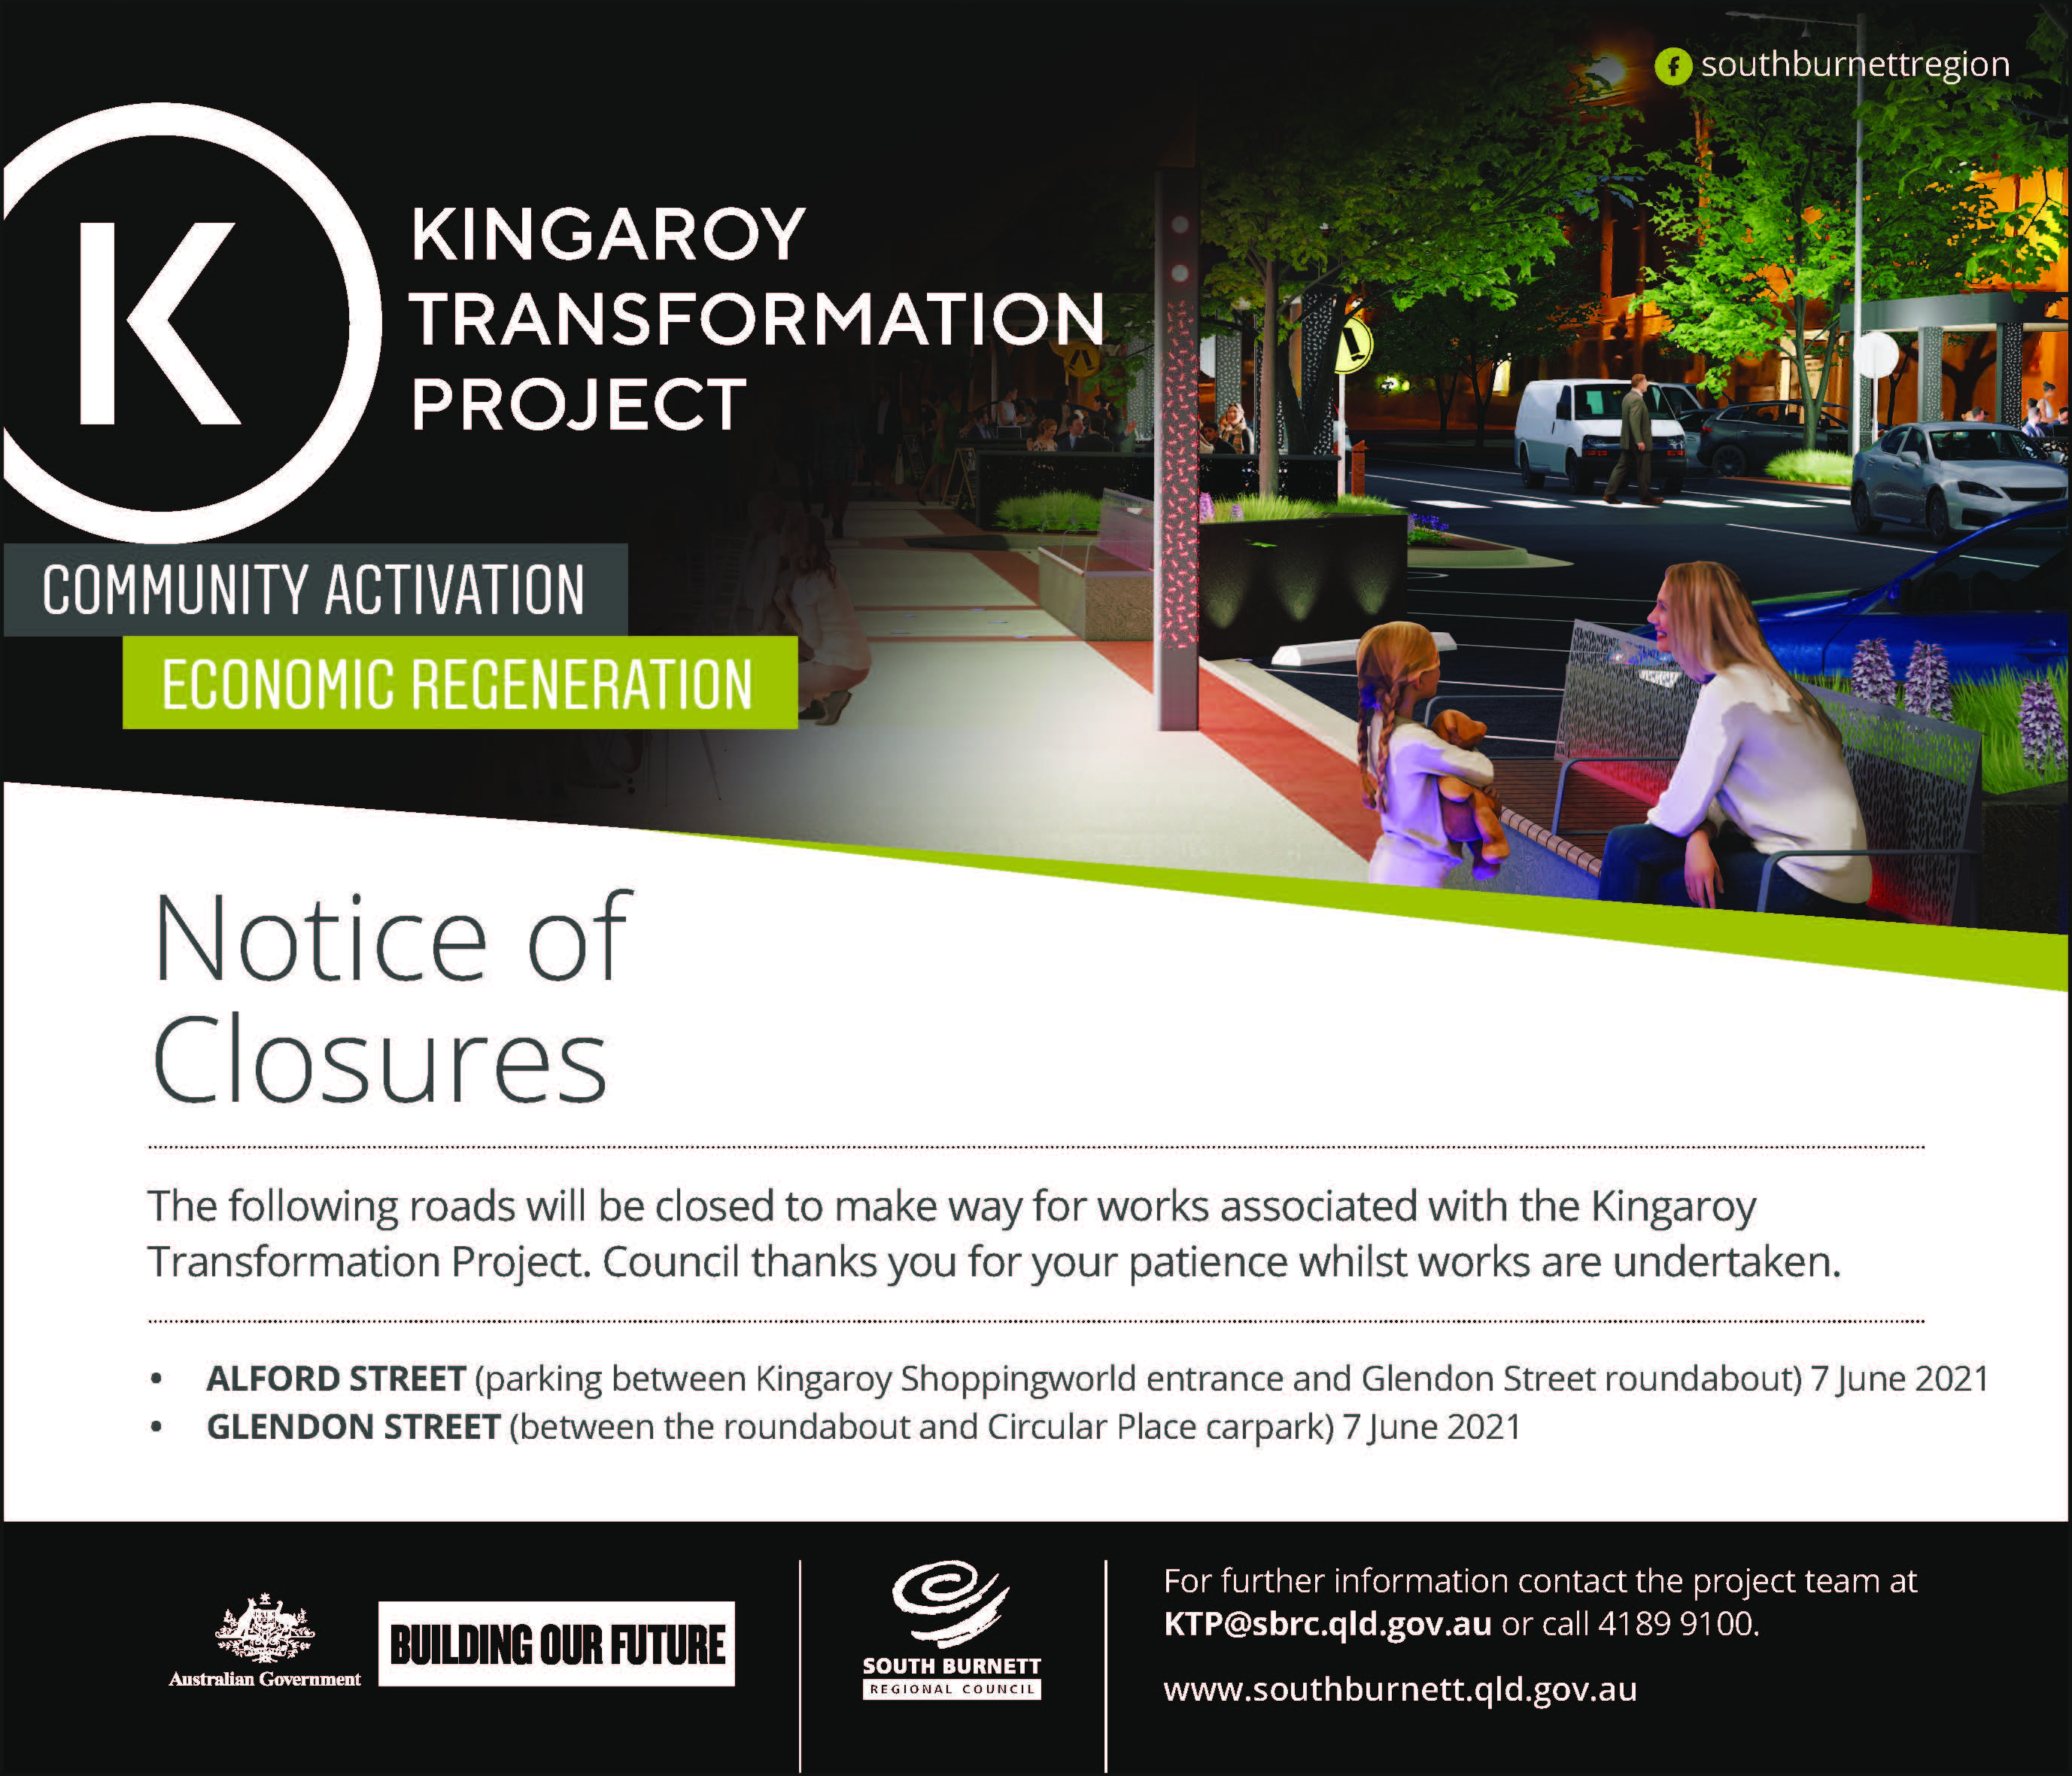 Image: Notice of Road Closures